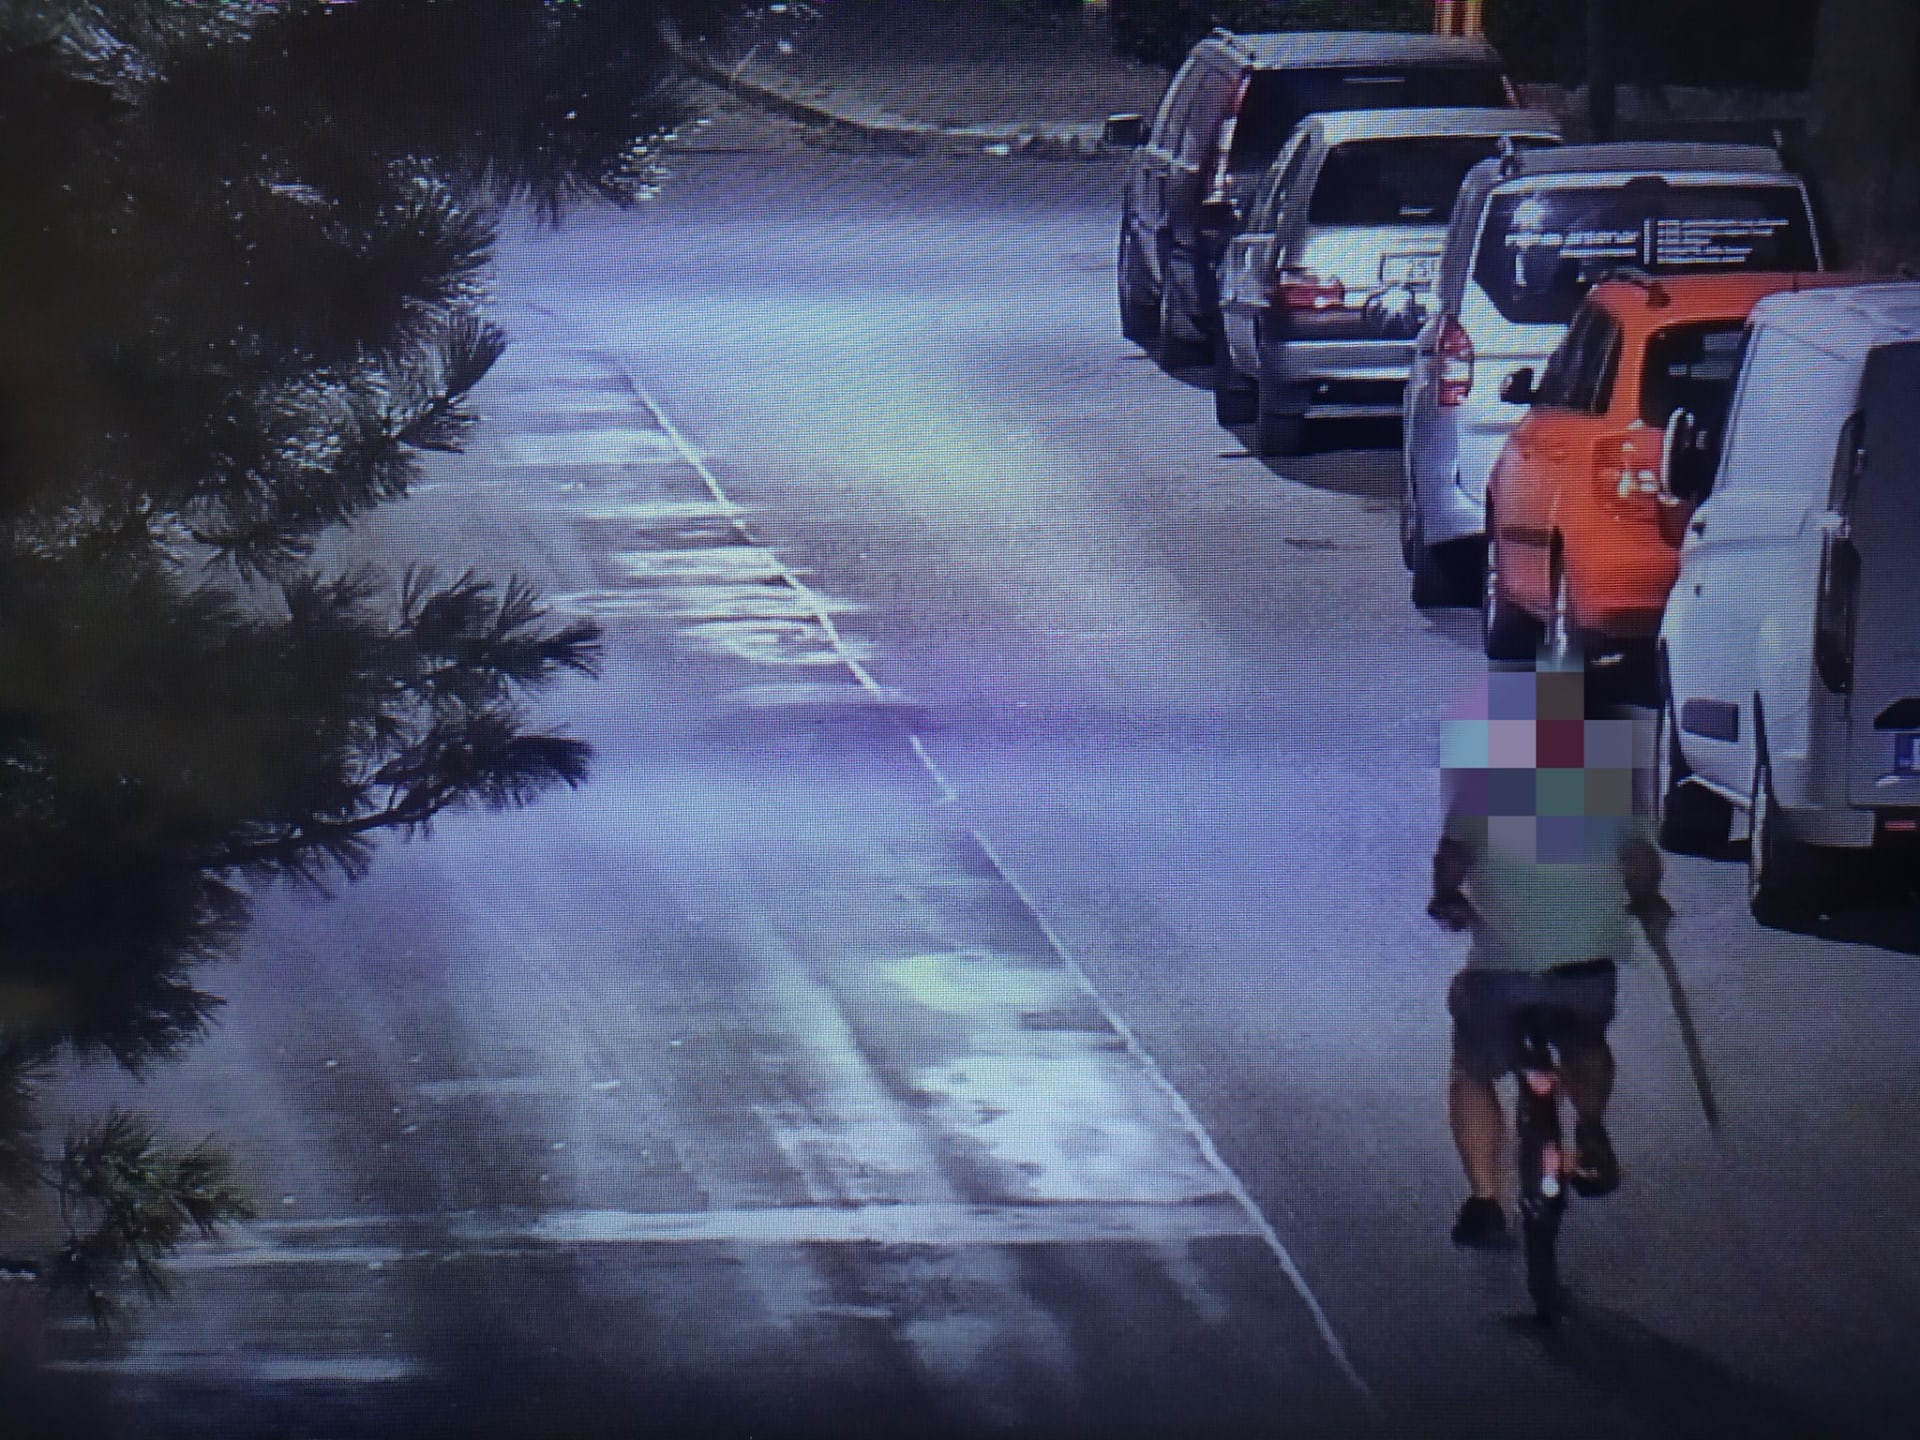 Ve čtvrtek krátce před půlnocí si operátor kamerového systému všiml muže, který jel na kole s krumpáčem v ruce. 